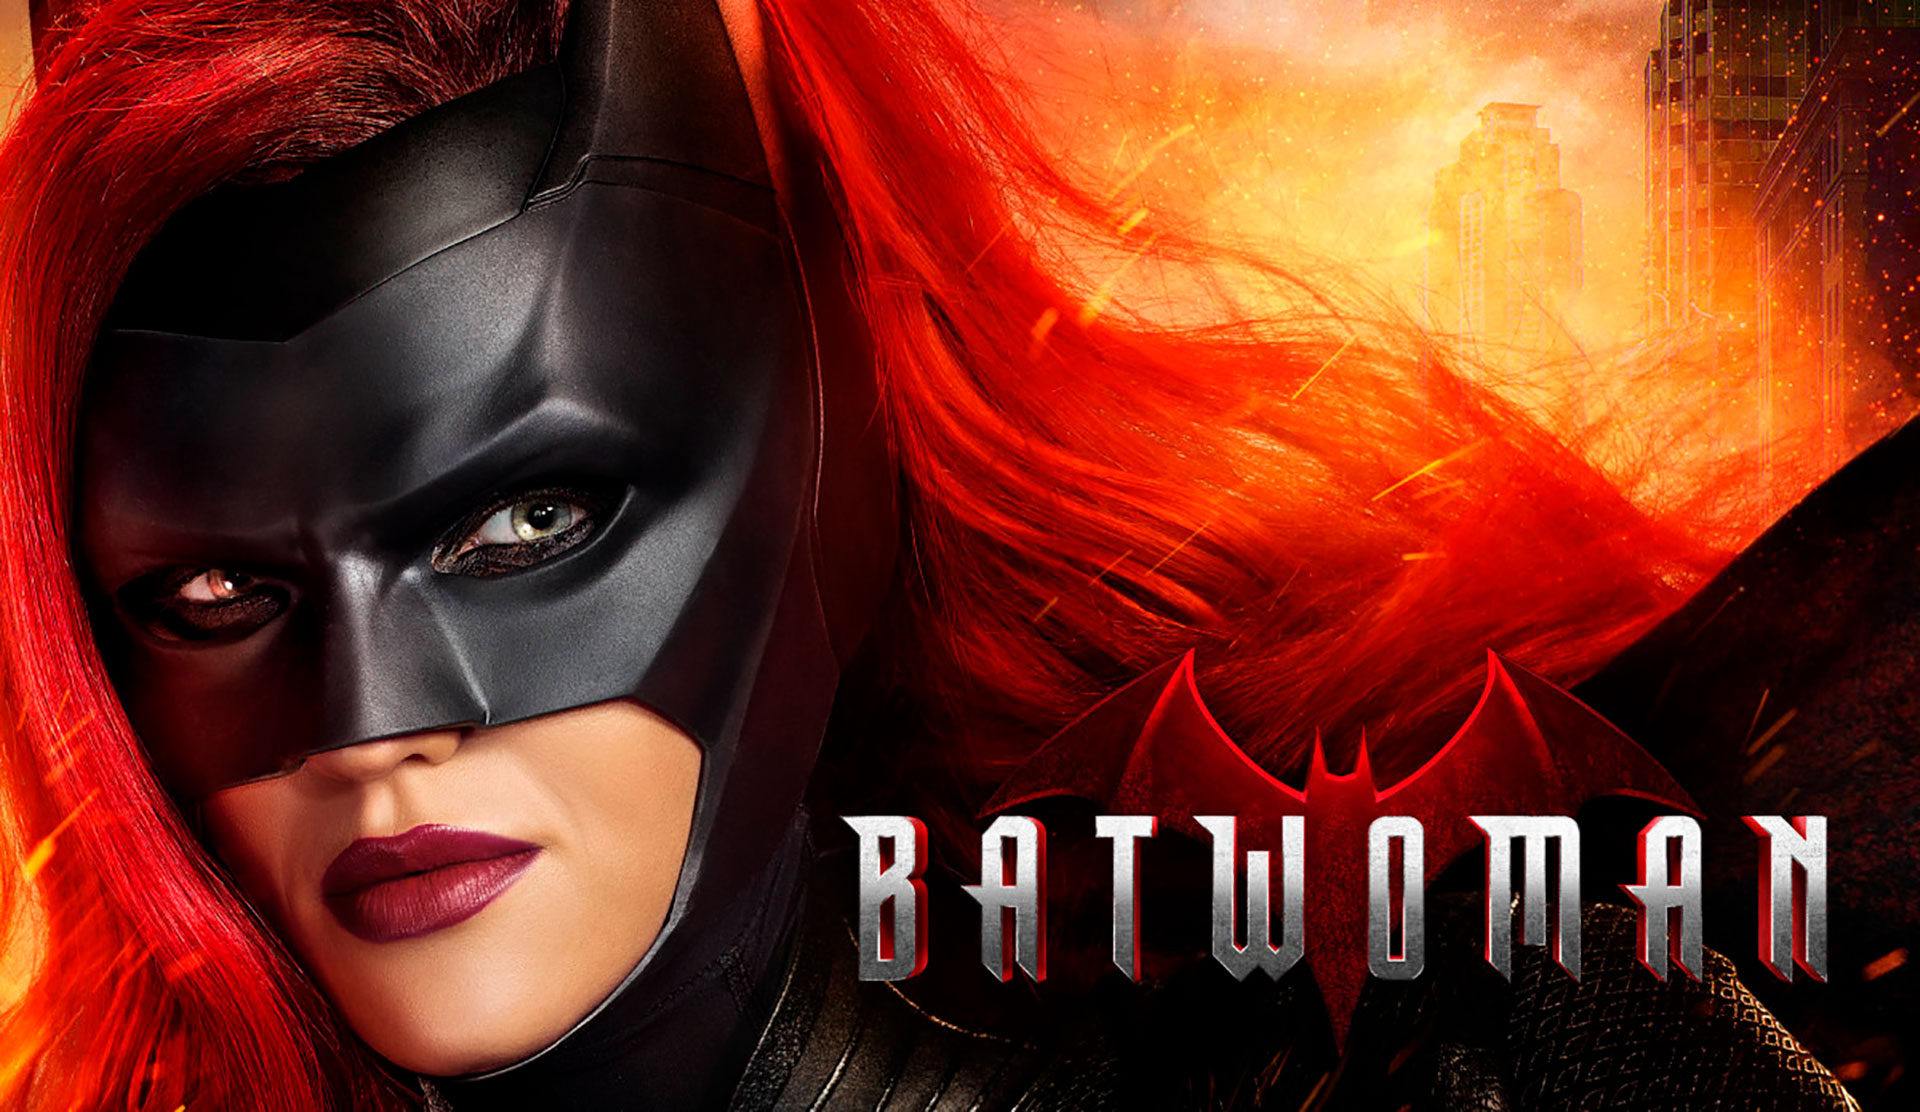 fondo de pantalla de batwoman,personaje de ficción,hombre murciélago,superhéroe,cg artwork,héroe